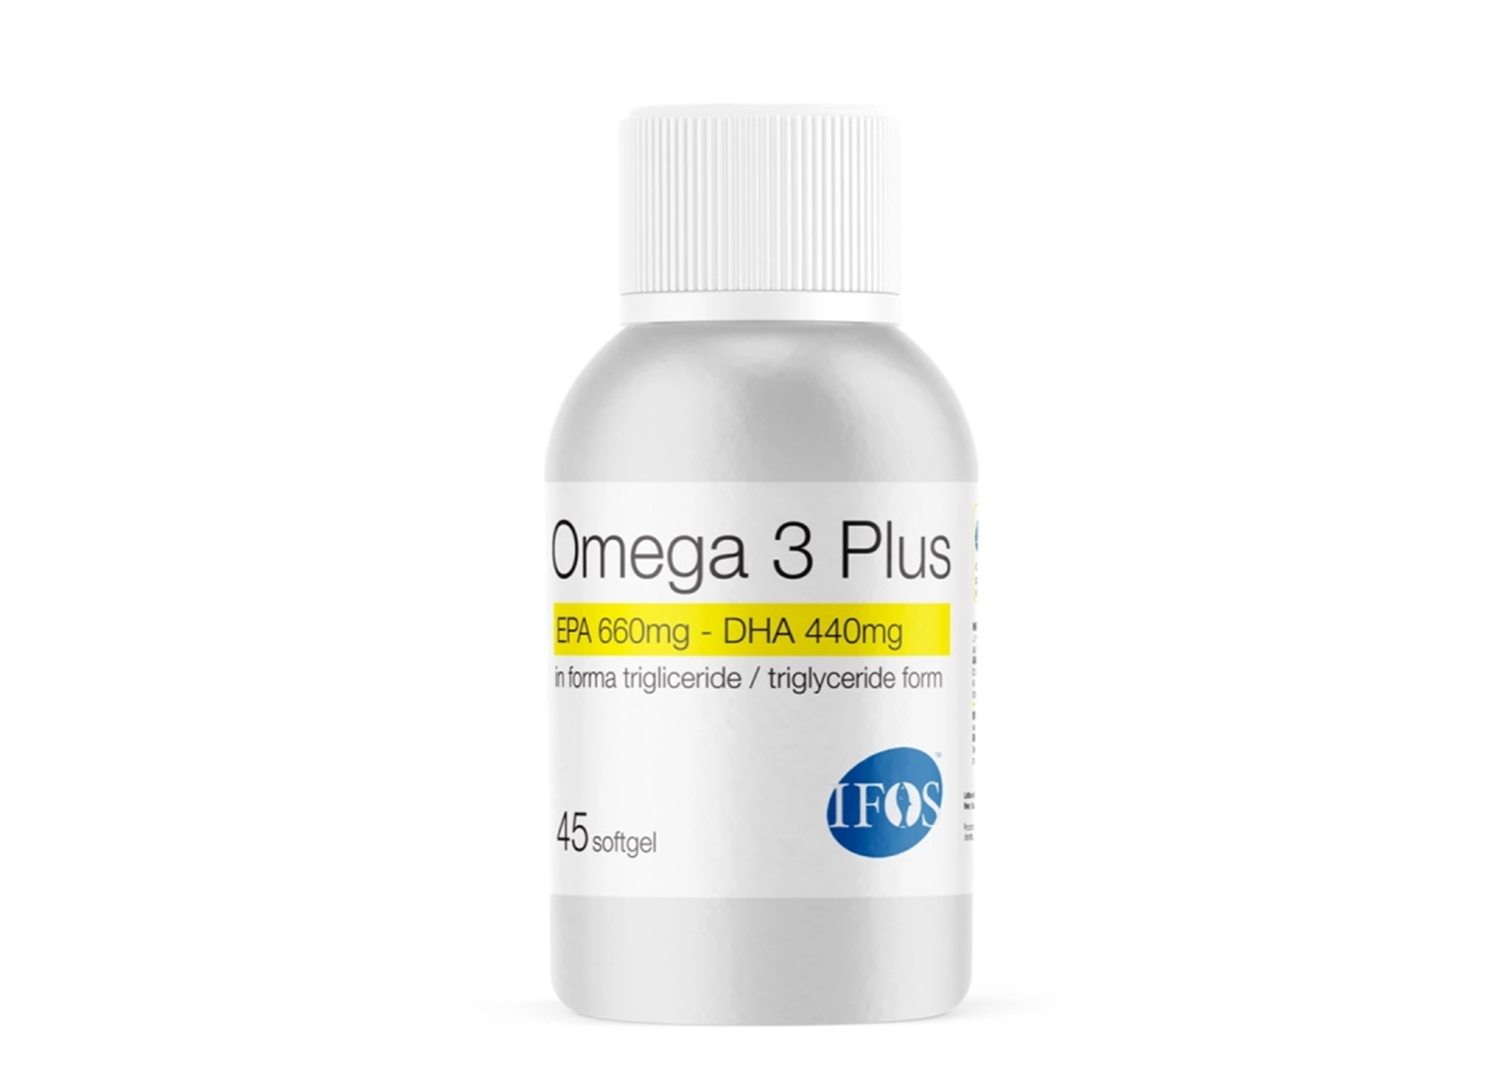 Omega 3 Plus 45 softgel